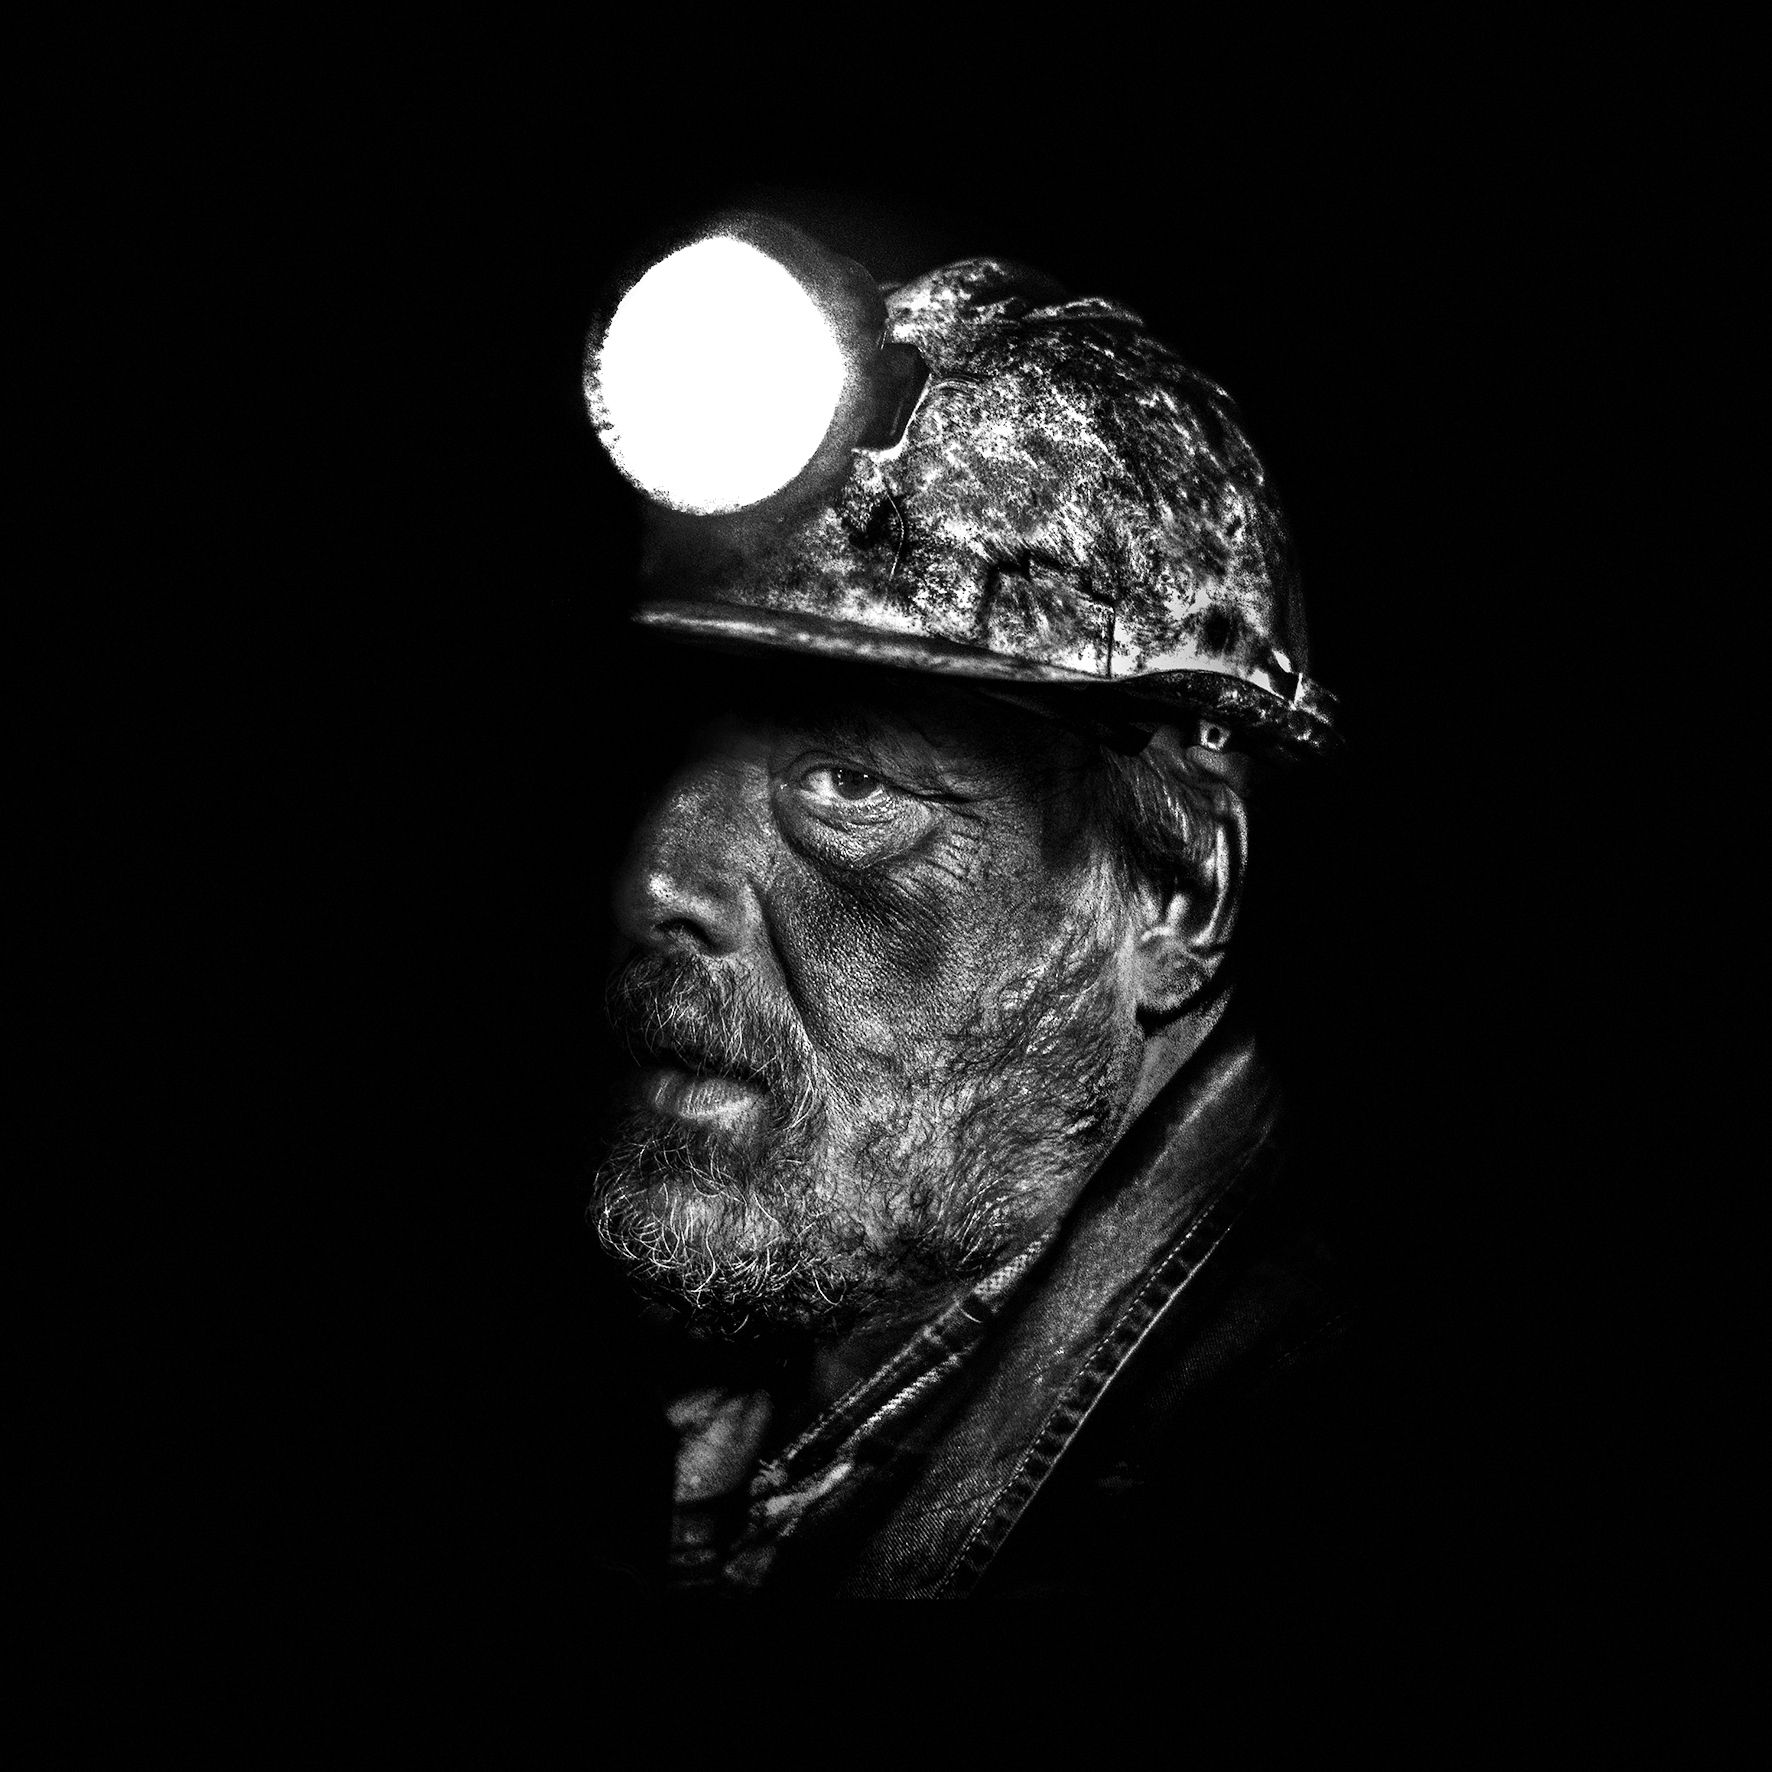 ‘Relato de un minero en Asturias’ es una de las imágenes ganadoras que podrá verse en la muestra. 